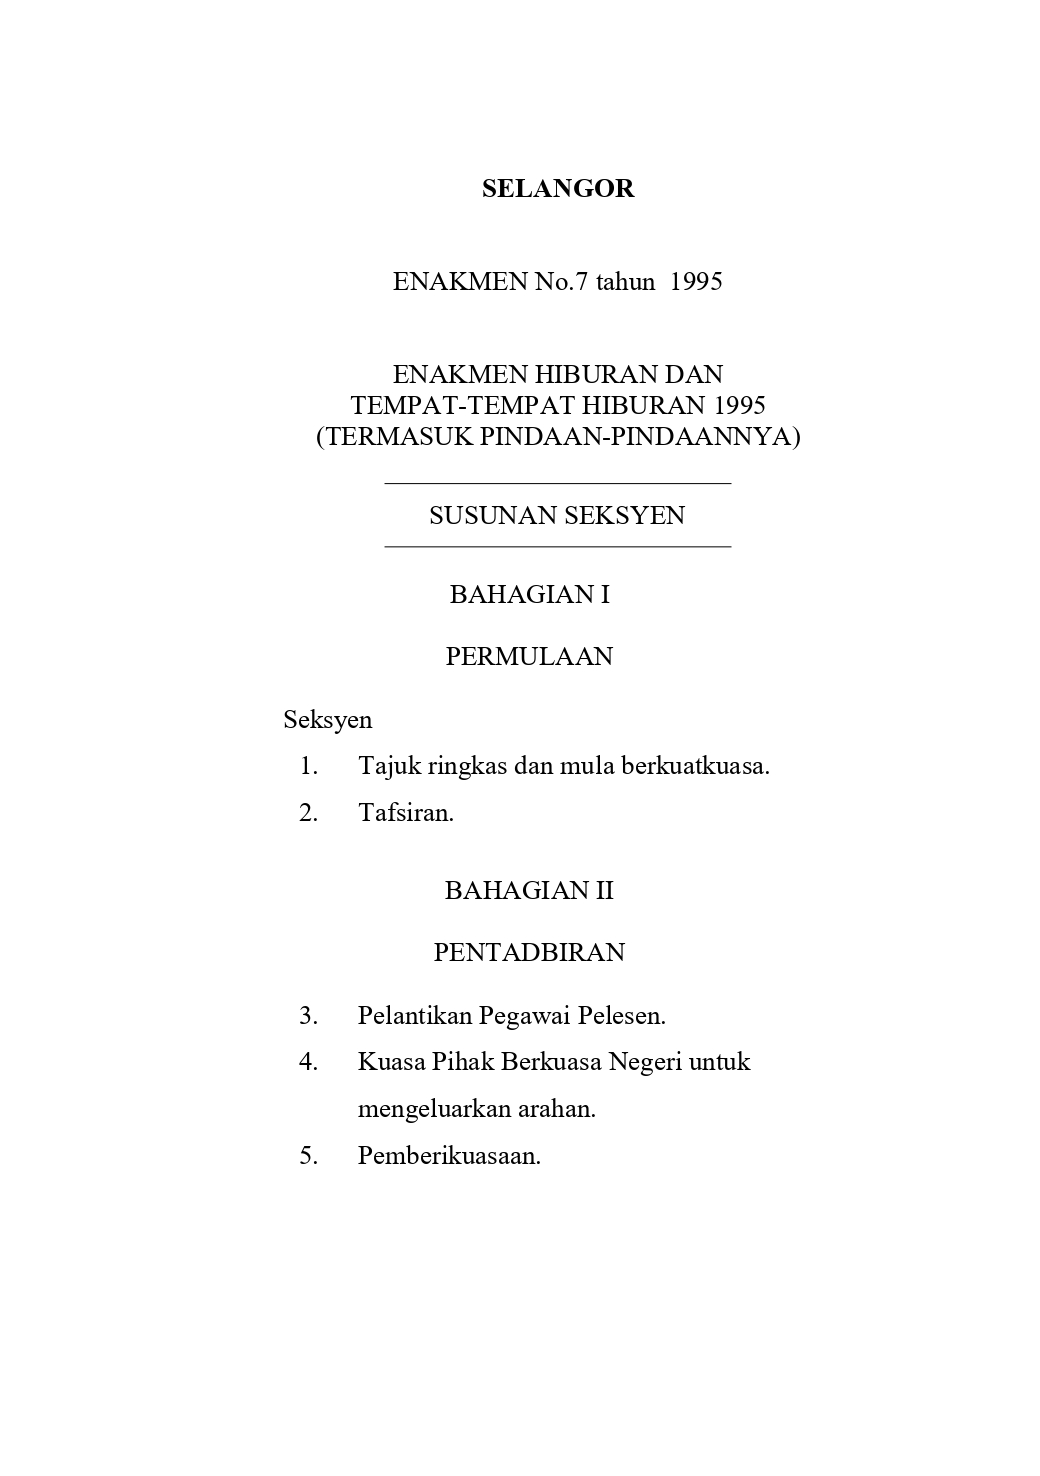 Enakmen Hiburan dan Tempat-Tempat Hiburan (Selangor) 1995 (Termasuk Pindaan-Pindaannya) - Enakmen No.7 Tahun 1995